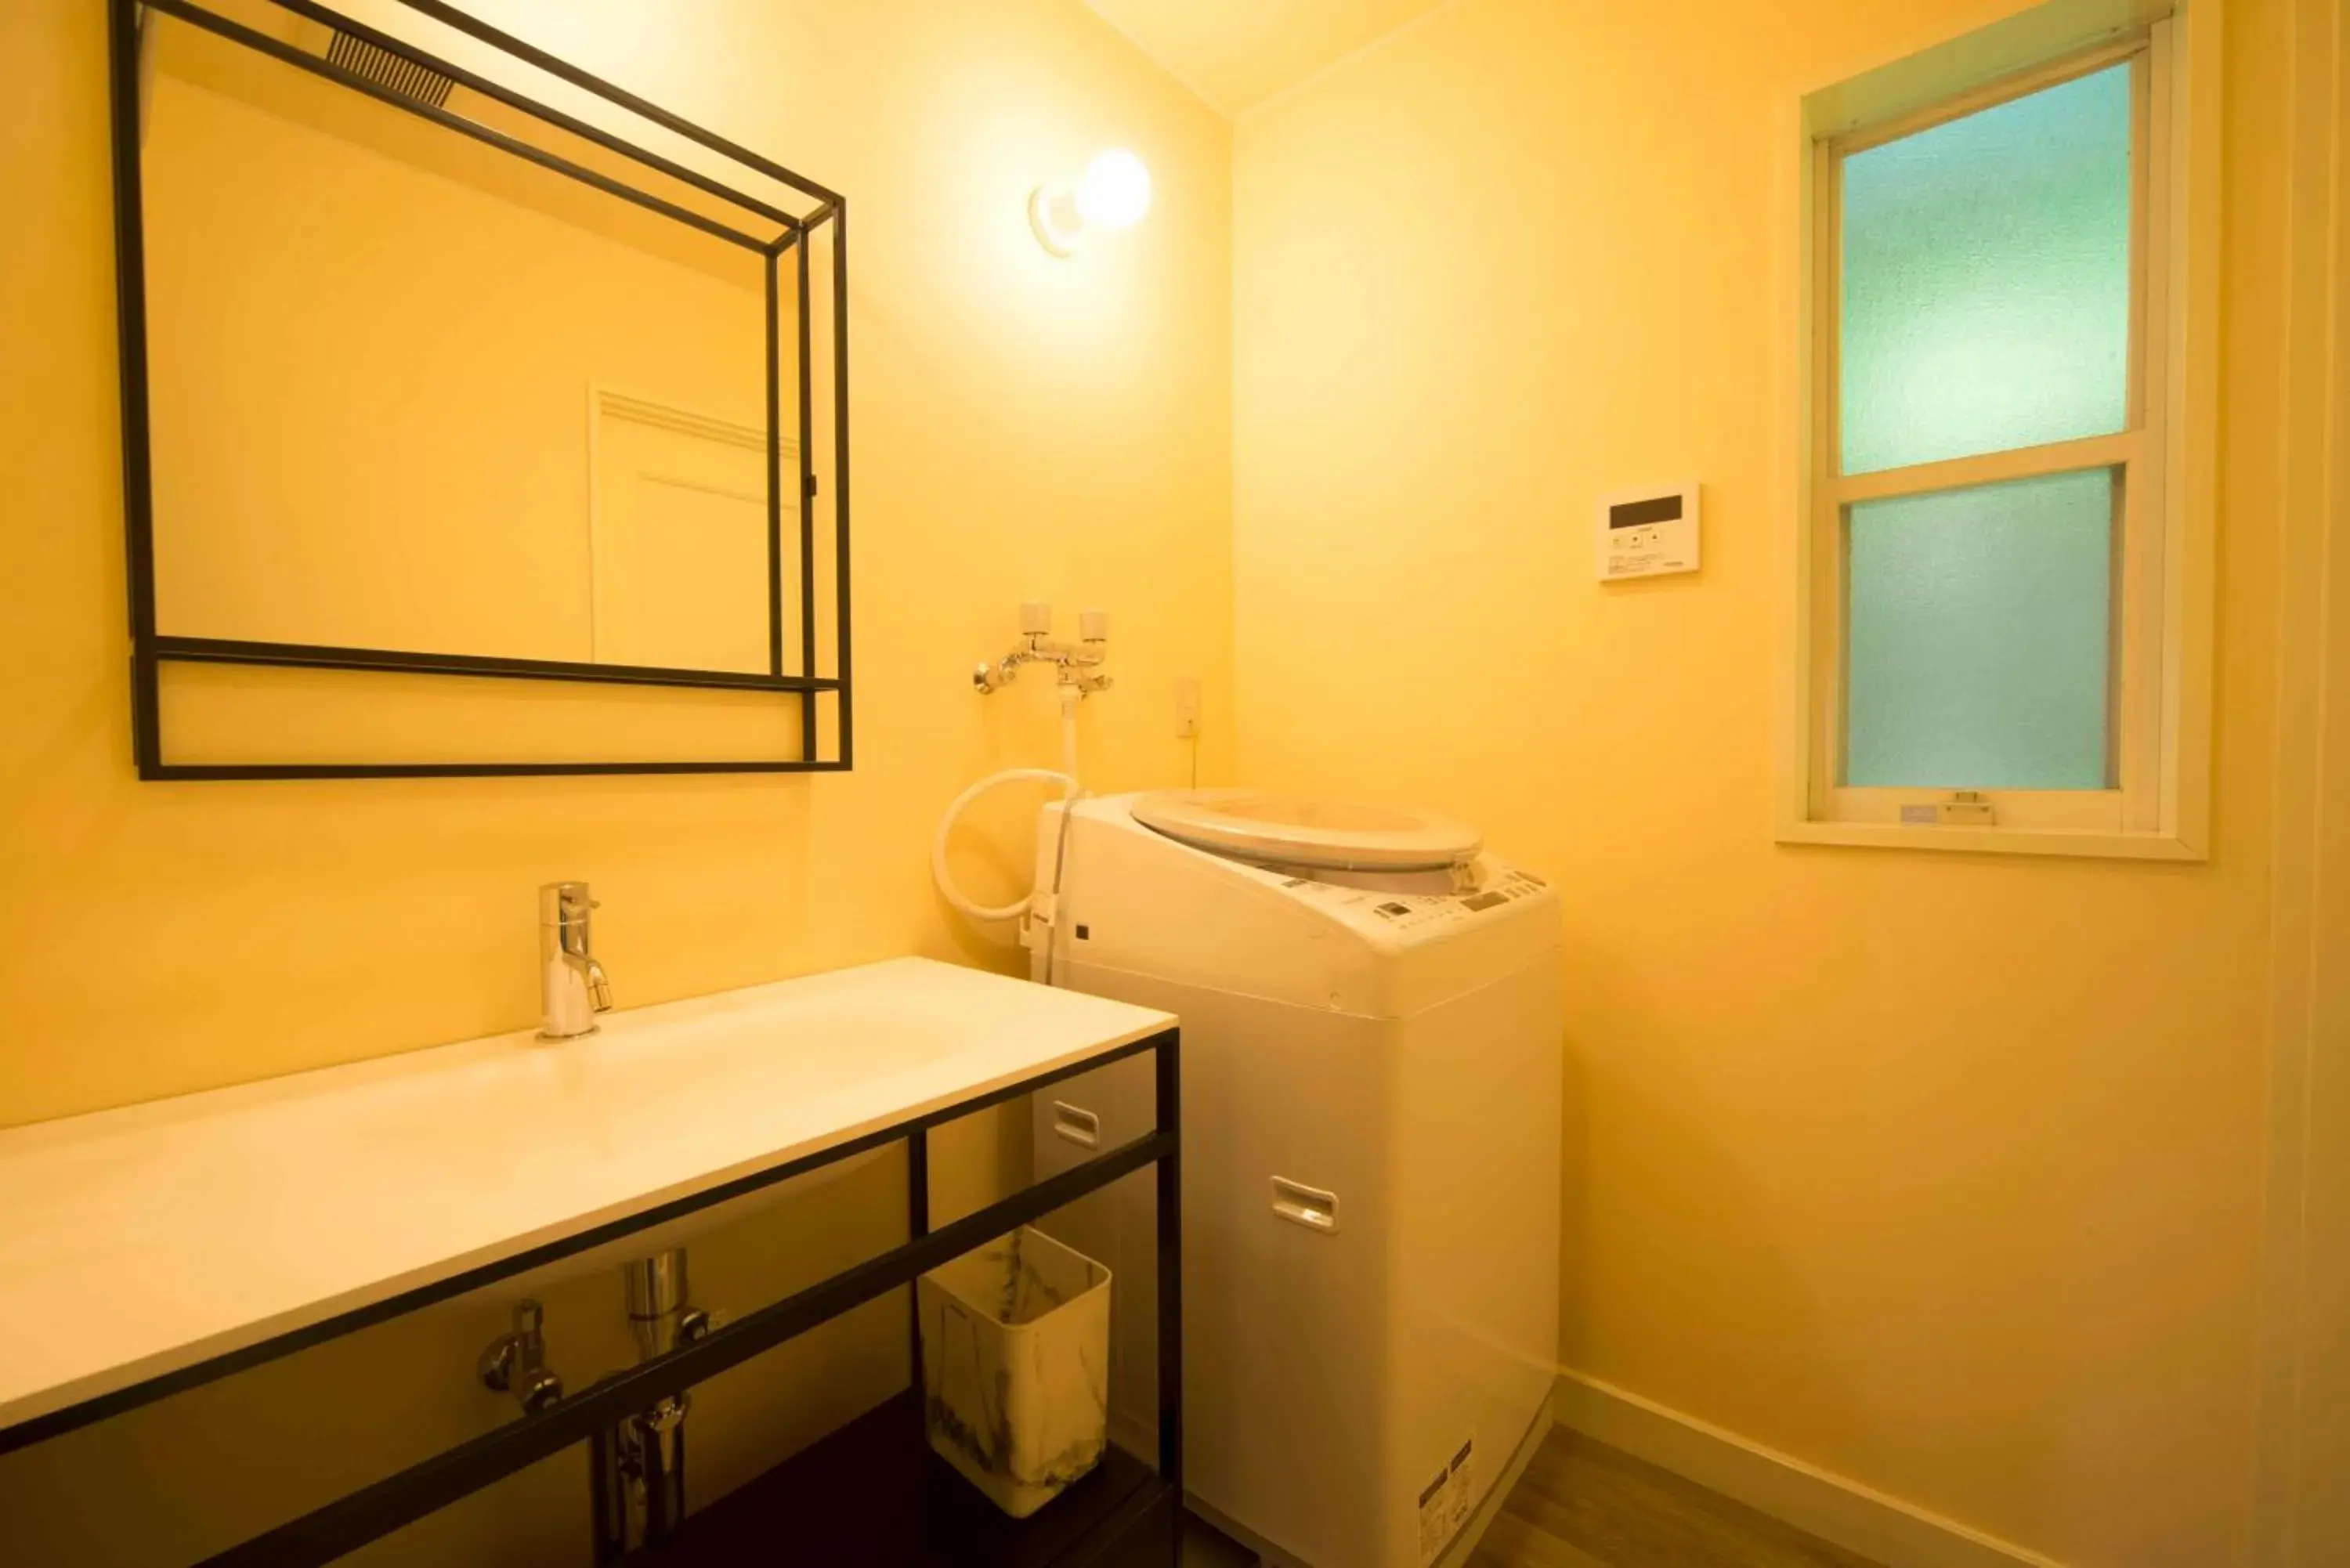 Area and facilities, Bathroom in Resort Villa Takayama